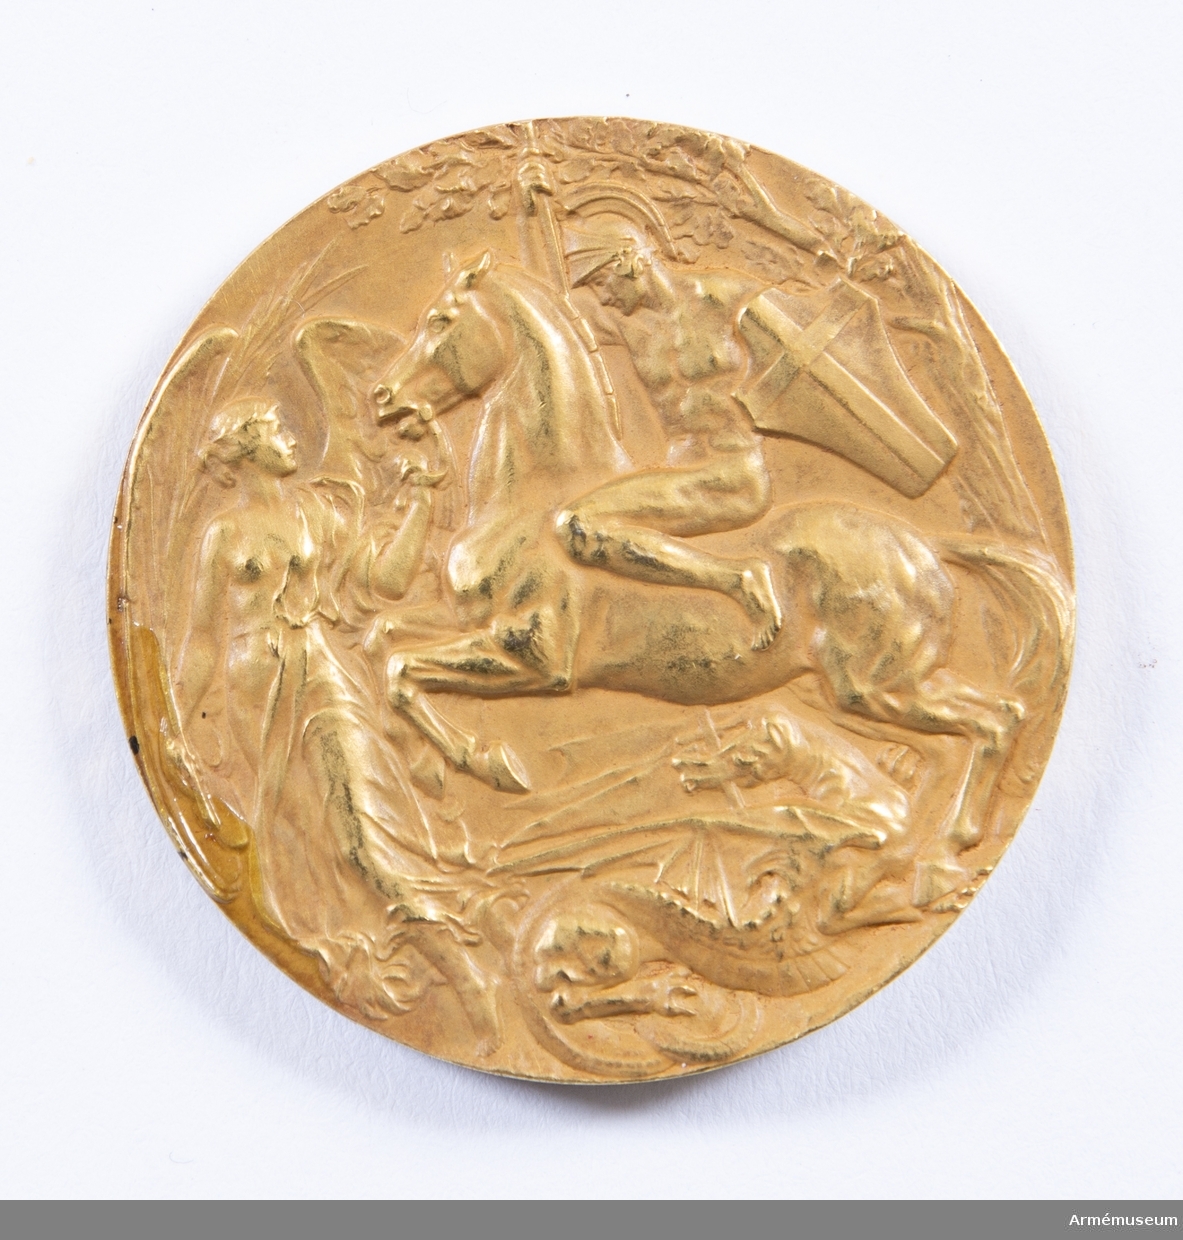 Grupp M II.
Guldmedalj vunnen av Oscar Gomer Swahn i löpande hjort, enkelskott, OS 1908 i London.